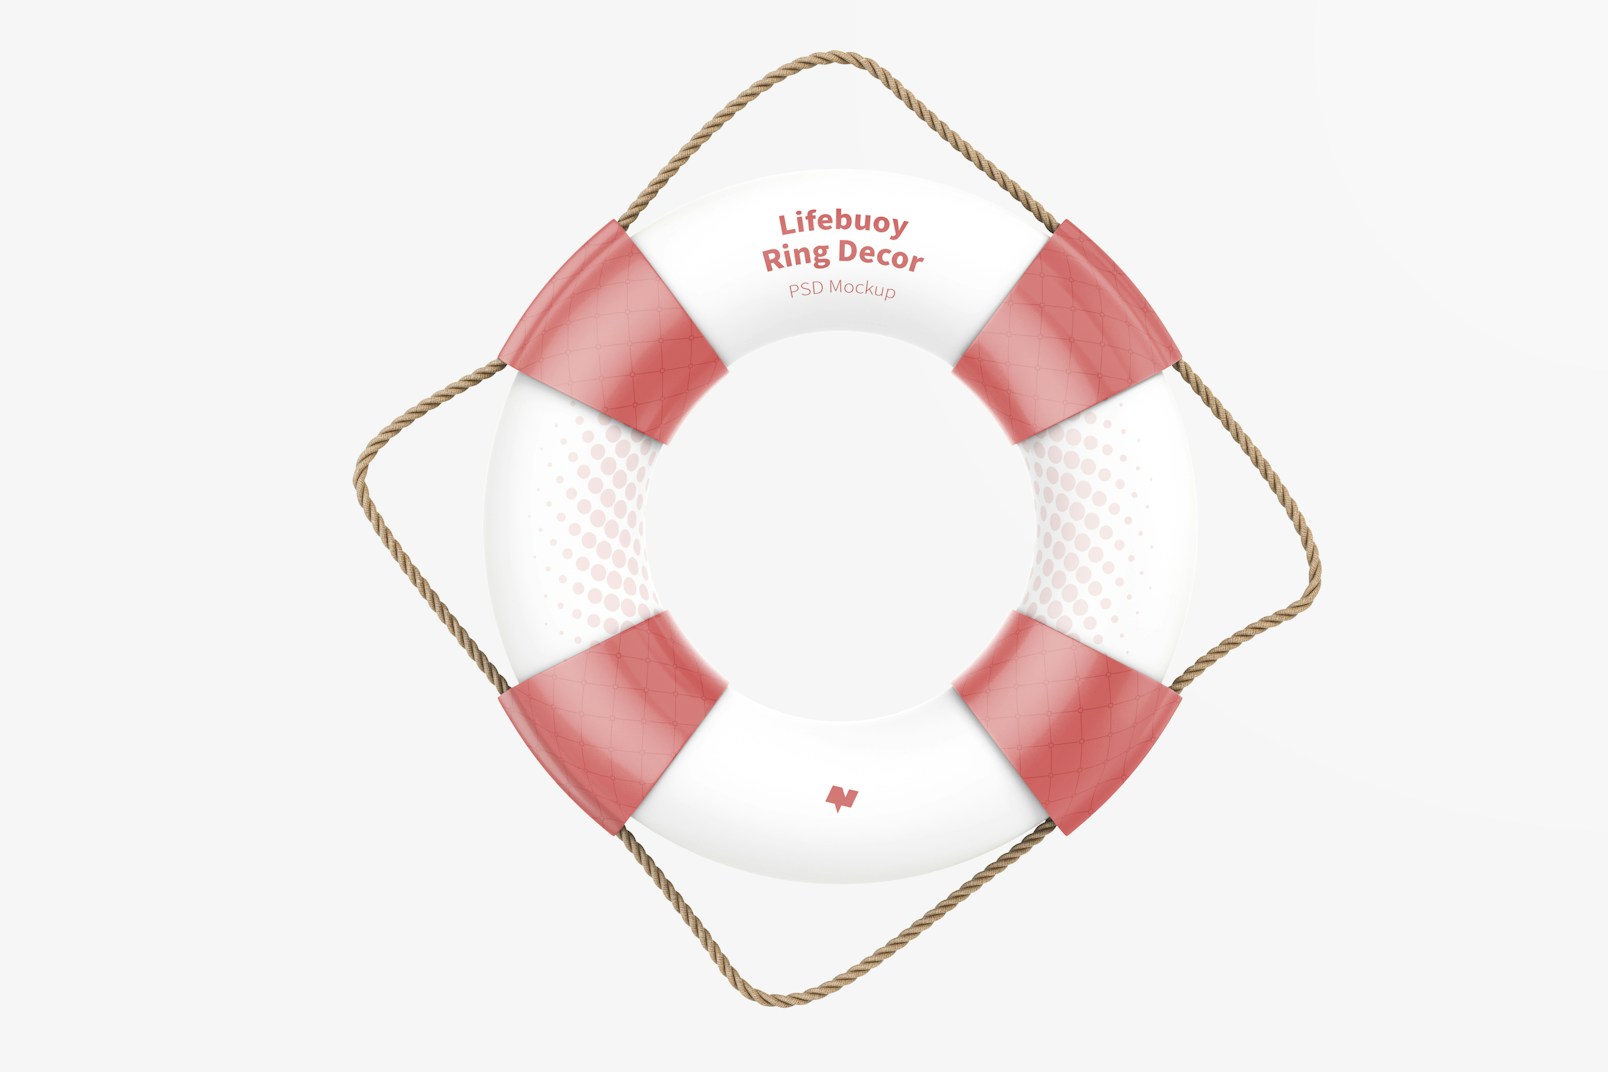 Lifebuoy Ring Decor Mockup